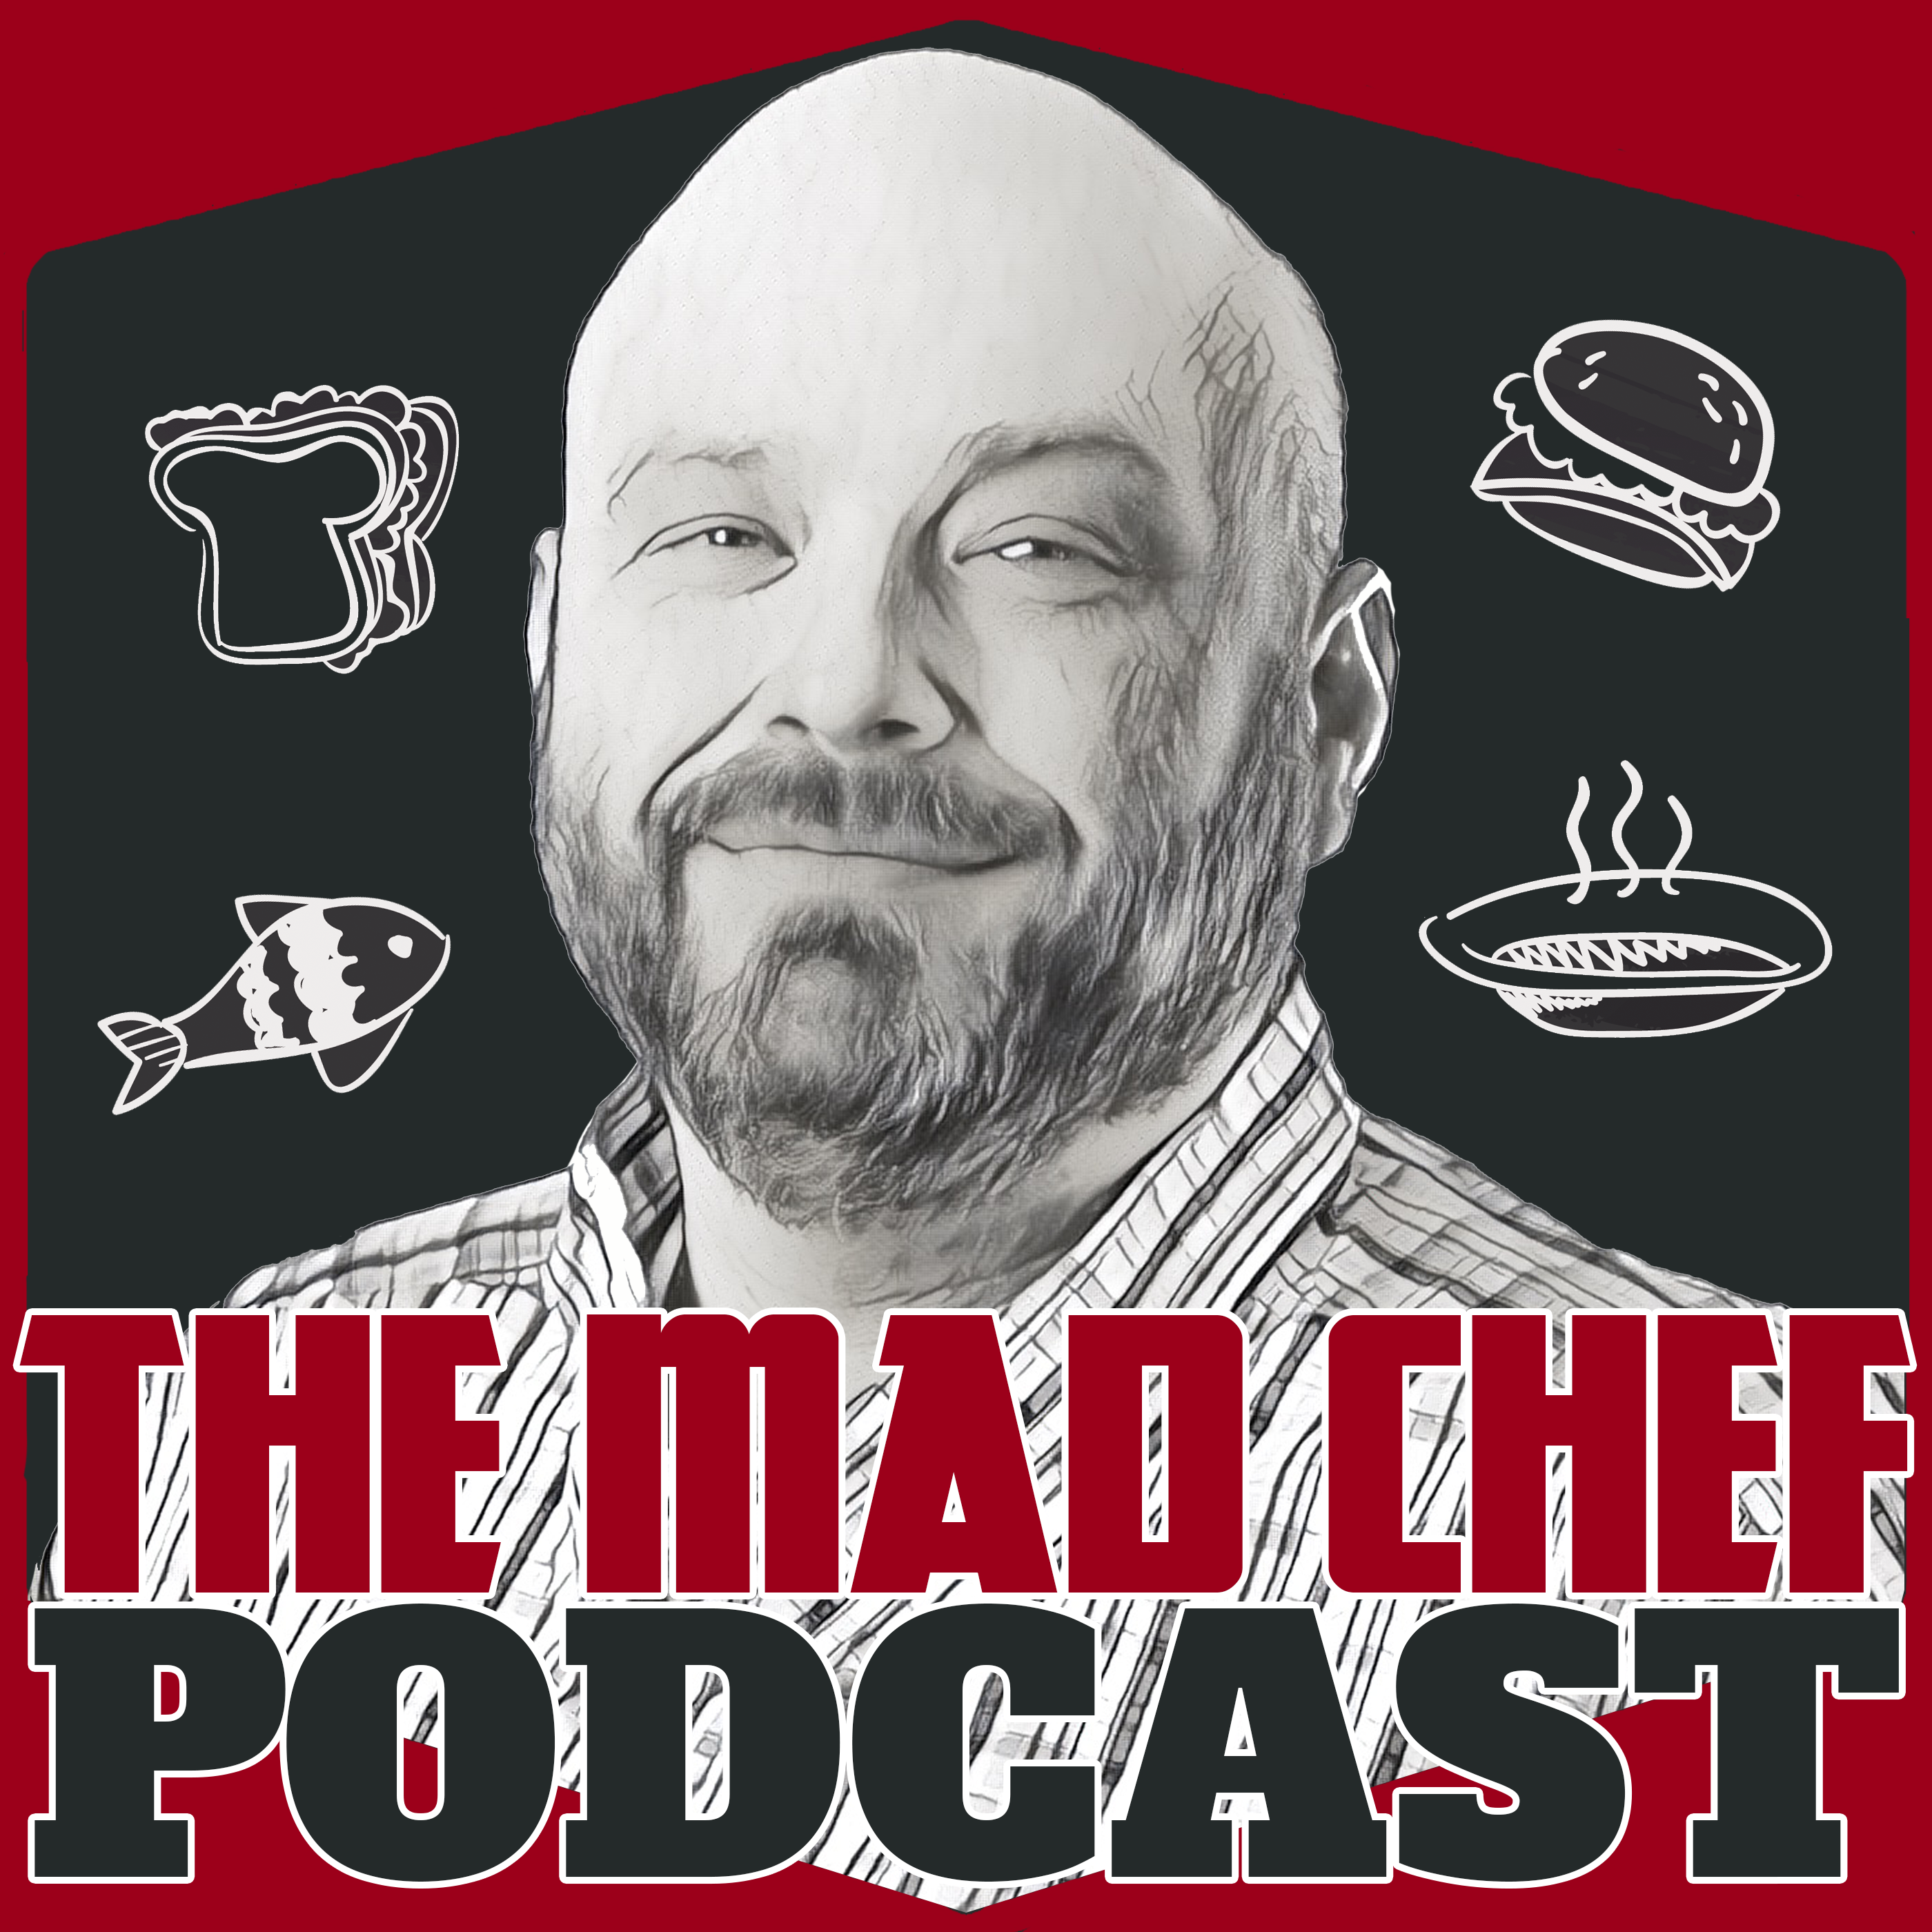 The Mad Chef: Brian Child